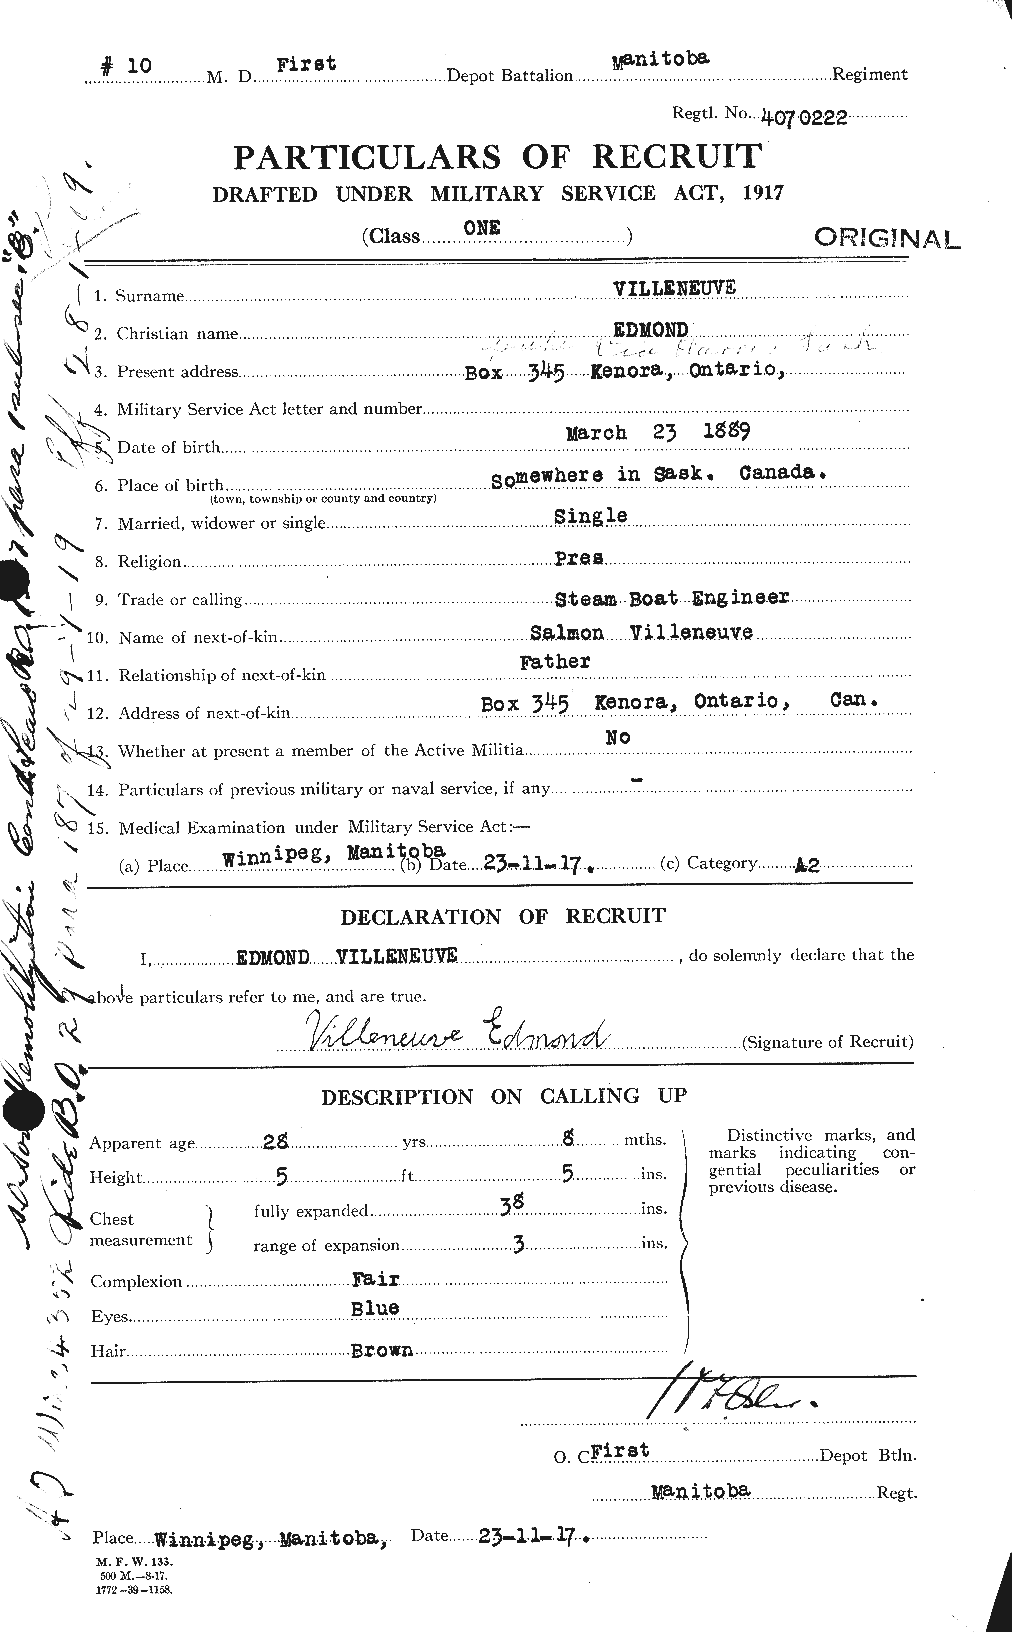 Dossiers du Personnel de la Première Guerre mondiale - CEC 653808a